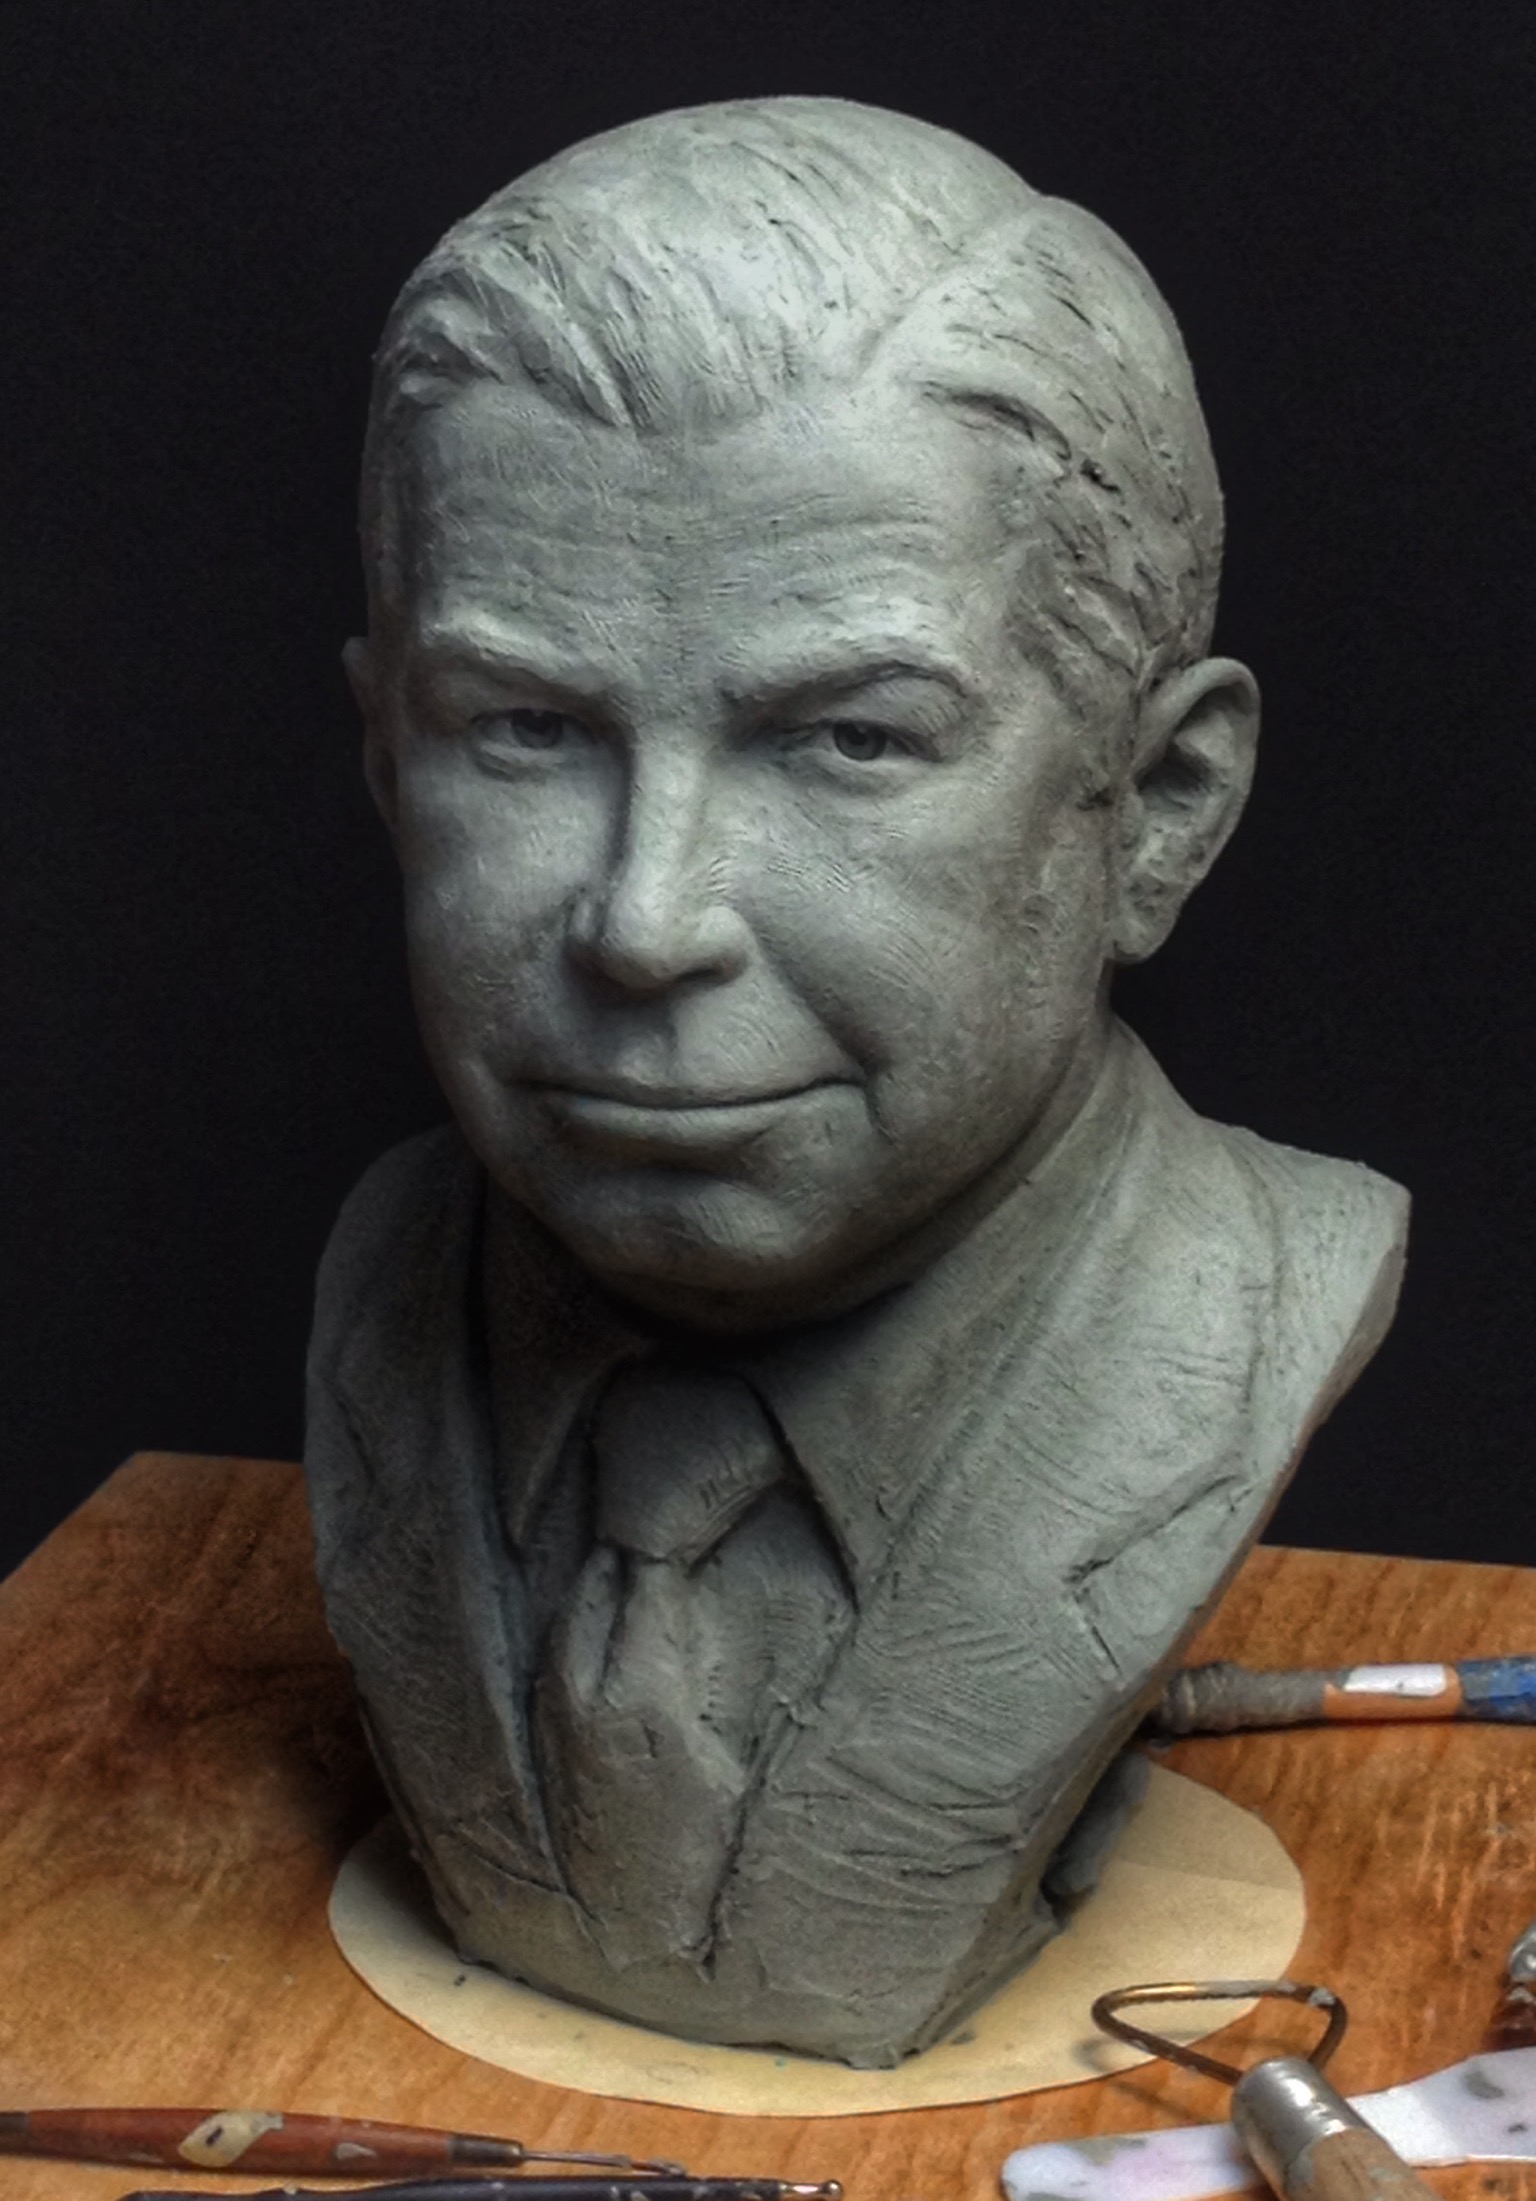 Skaggs Clay bust sculpting in progress for TSRI La Jolla